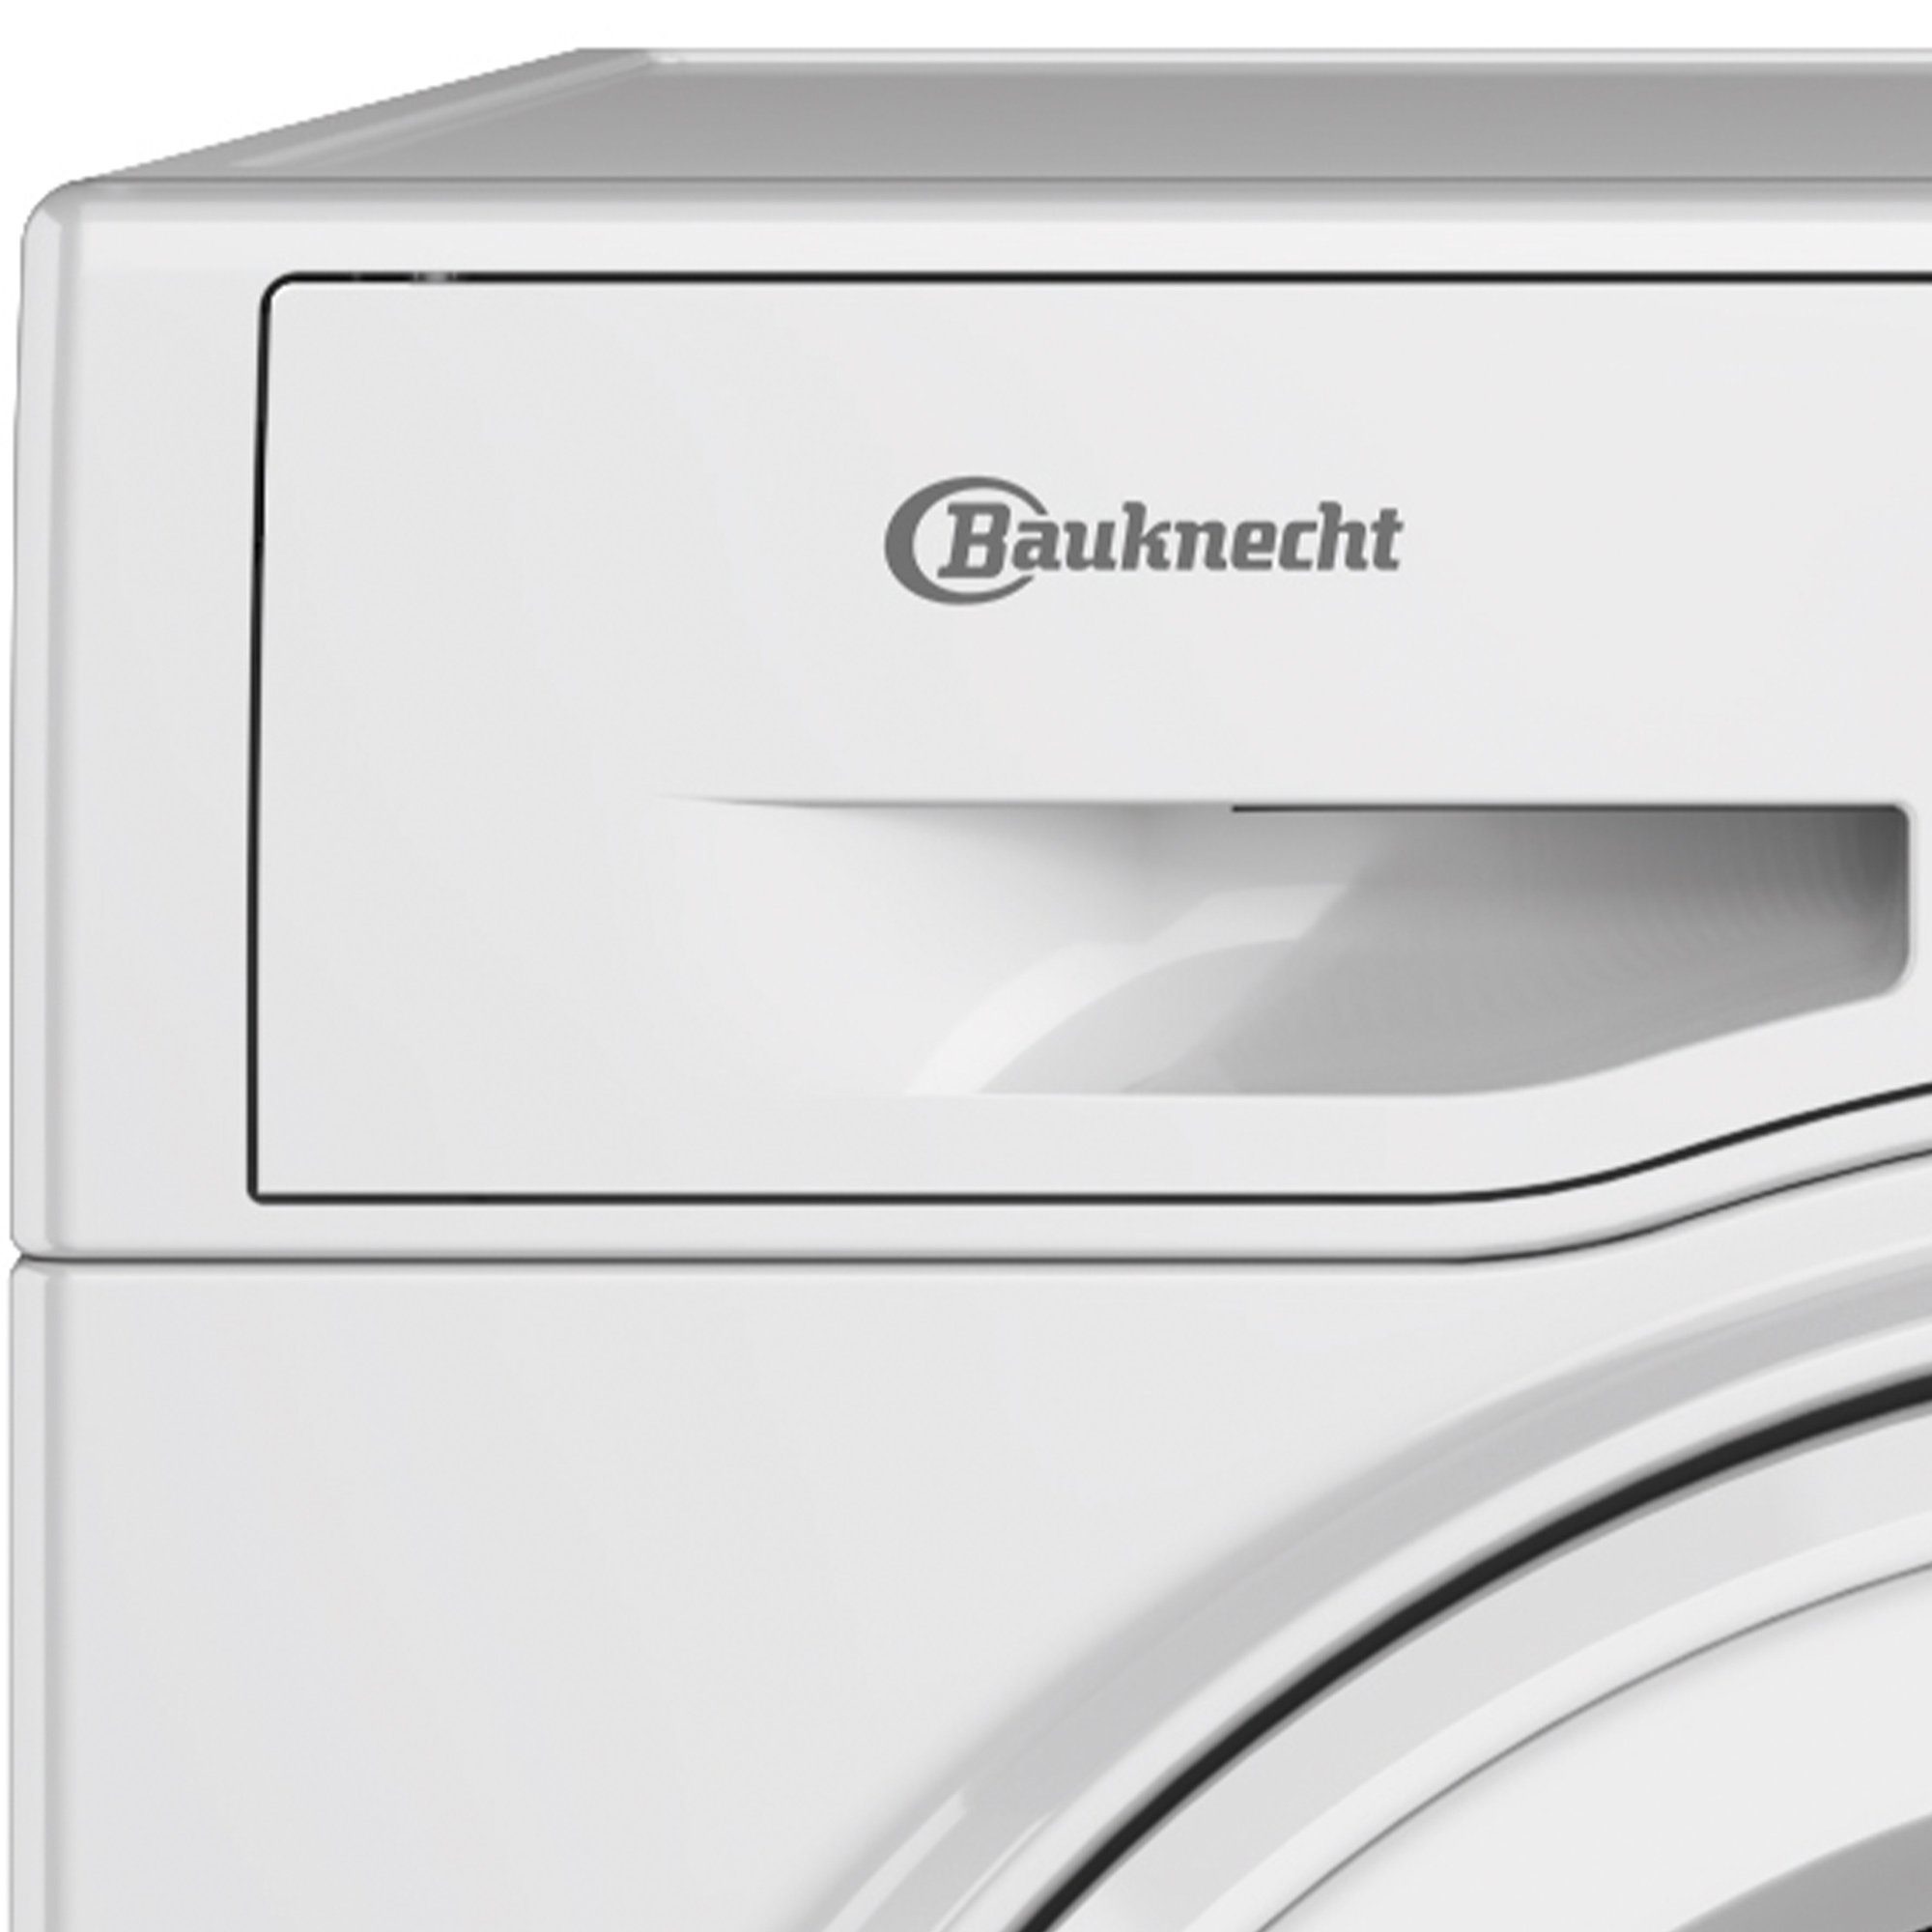 BAUKNECHT Waschtrockner Dynamic Inverter-Motor WT AO 86 43 N, 8,00 kg, 6  kg, 1400 U/min, Steam Hygiene, Mehrfachwasserschutz+, Steam Refresh